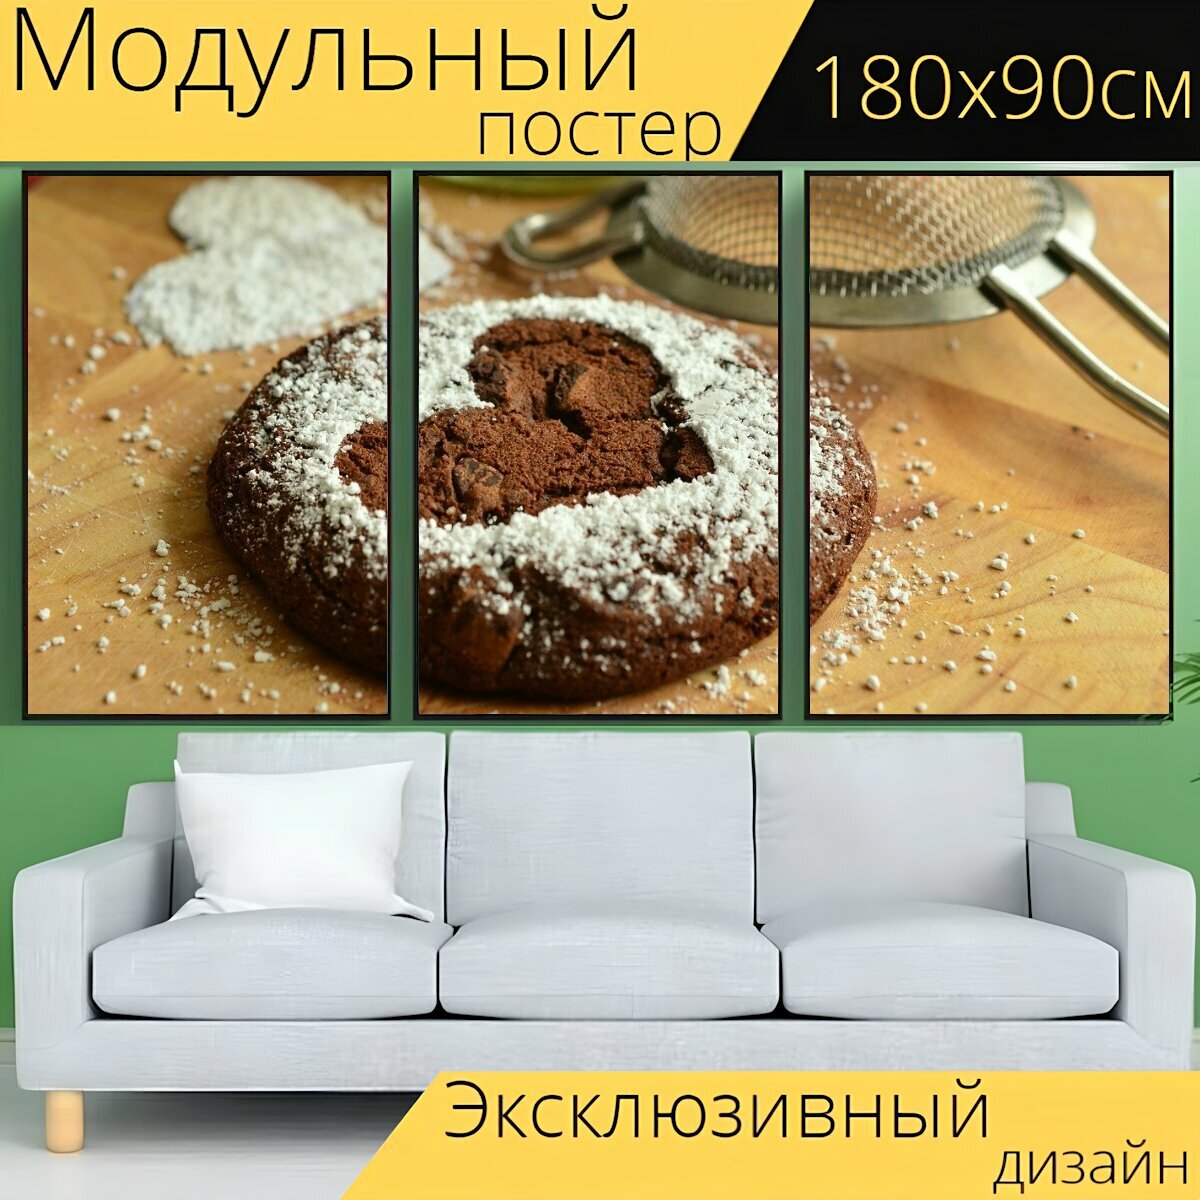 Модульный постер "Печенье, печь, выпечка" 180 x 90 см. для интерьера